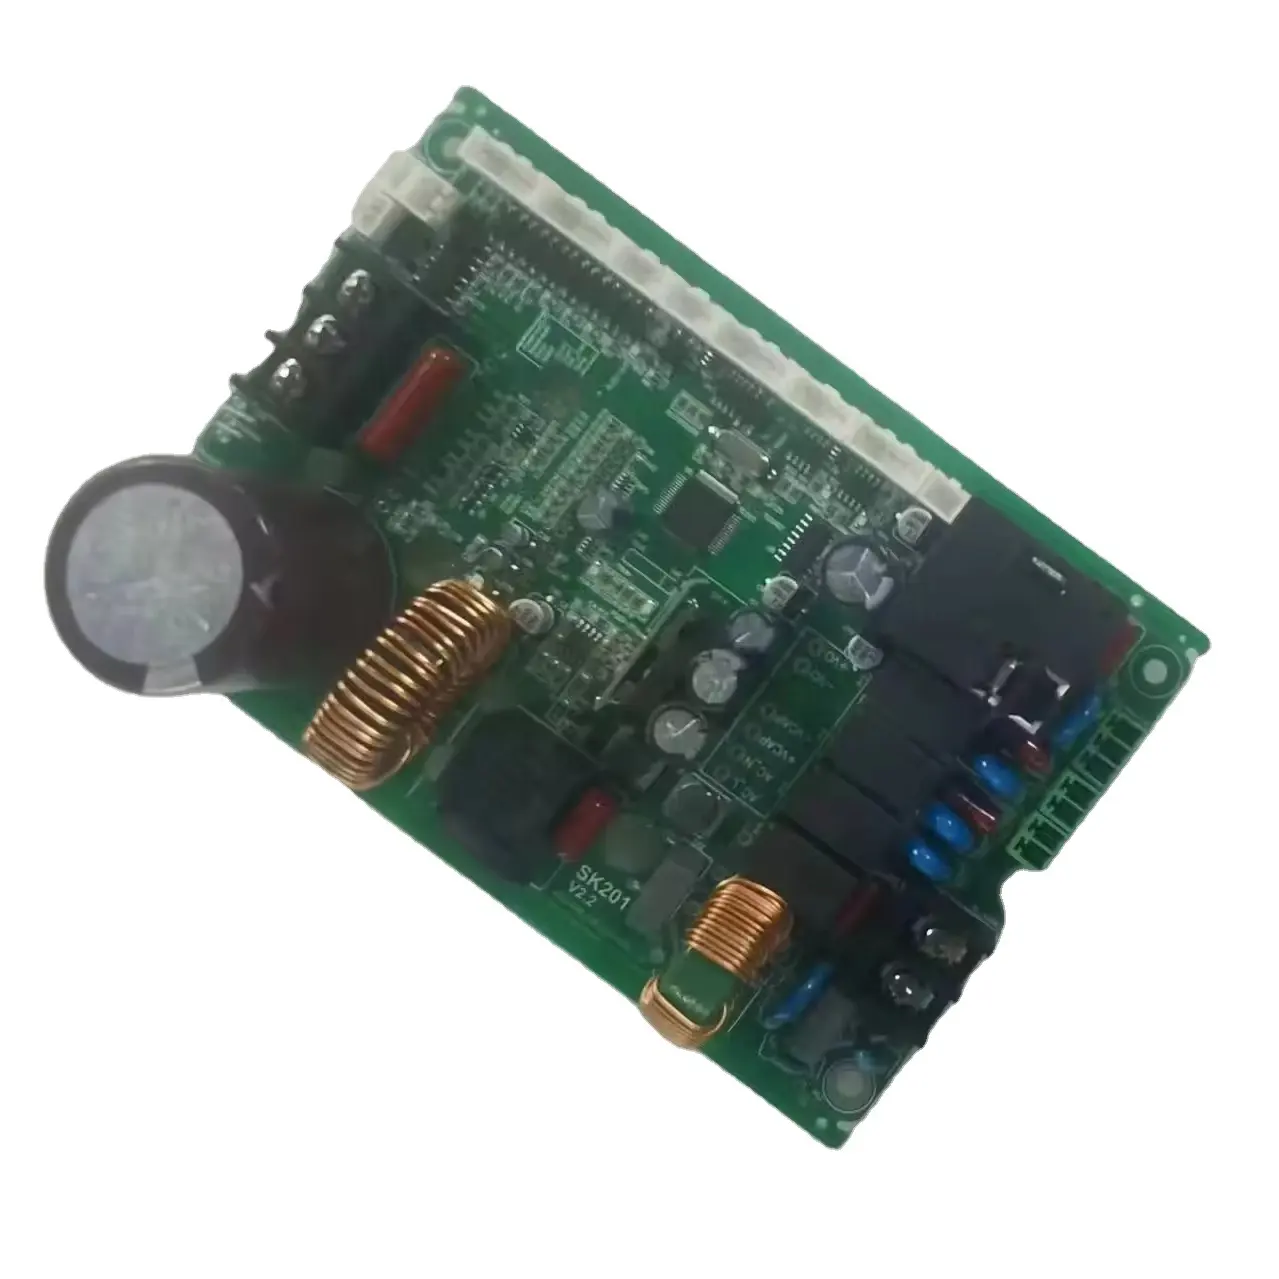 Assemblage de carte de circuit imprimé personnalisé (PCBA) Gerber à base de fichiers à une station fournie fournisseur OEM de carte prototype de carte PCB